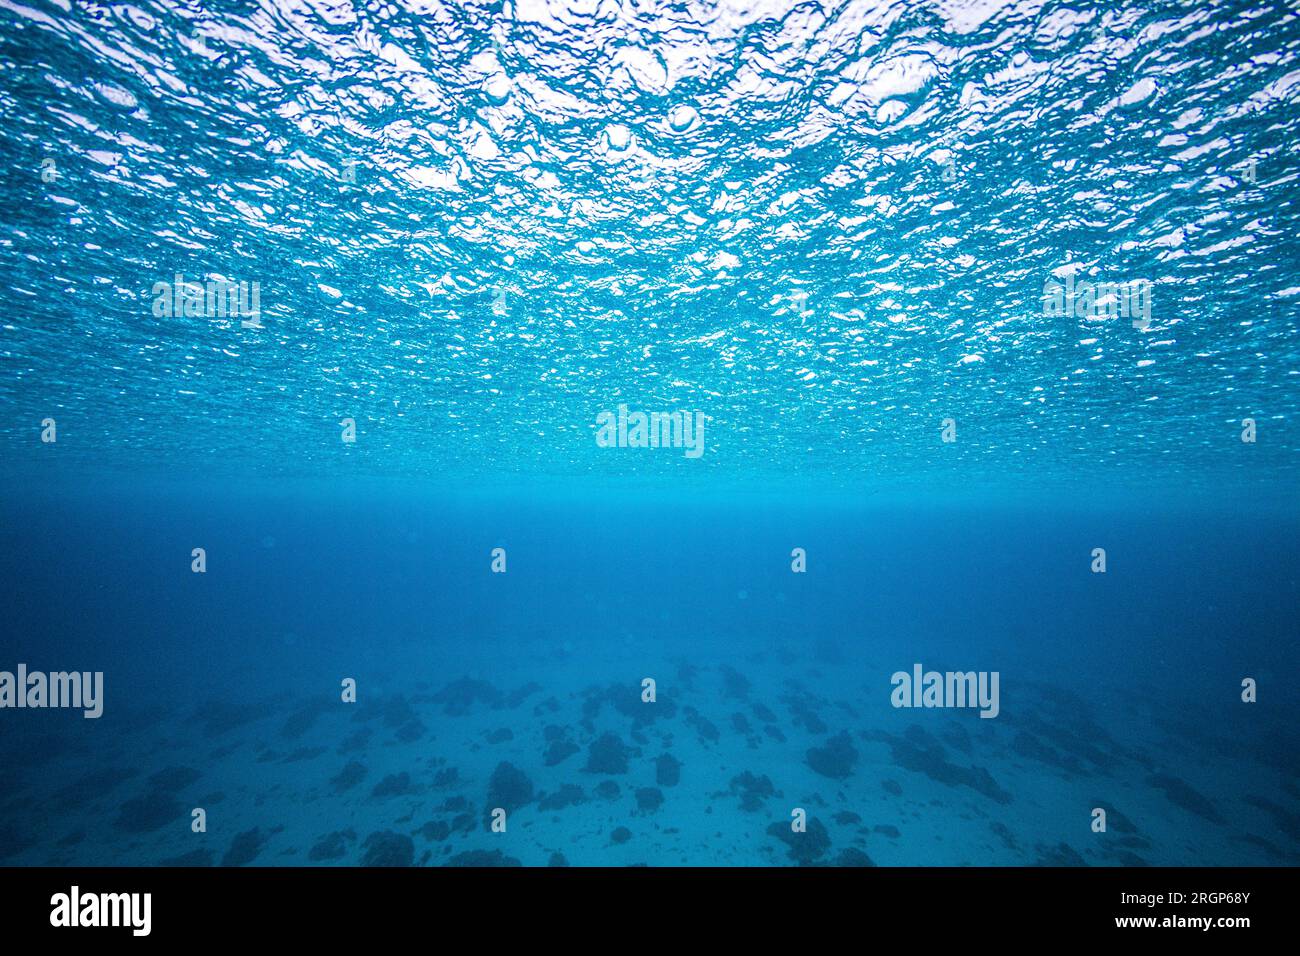 Ein Bild der regnerischen Meeresoberfläche, das unter Wasser aufgenommen wurde Stockfoto